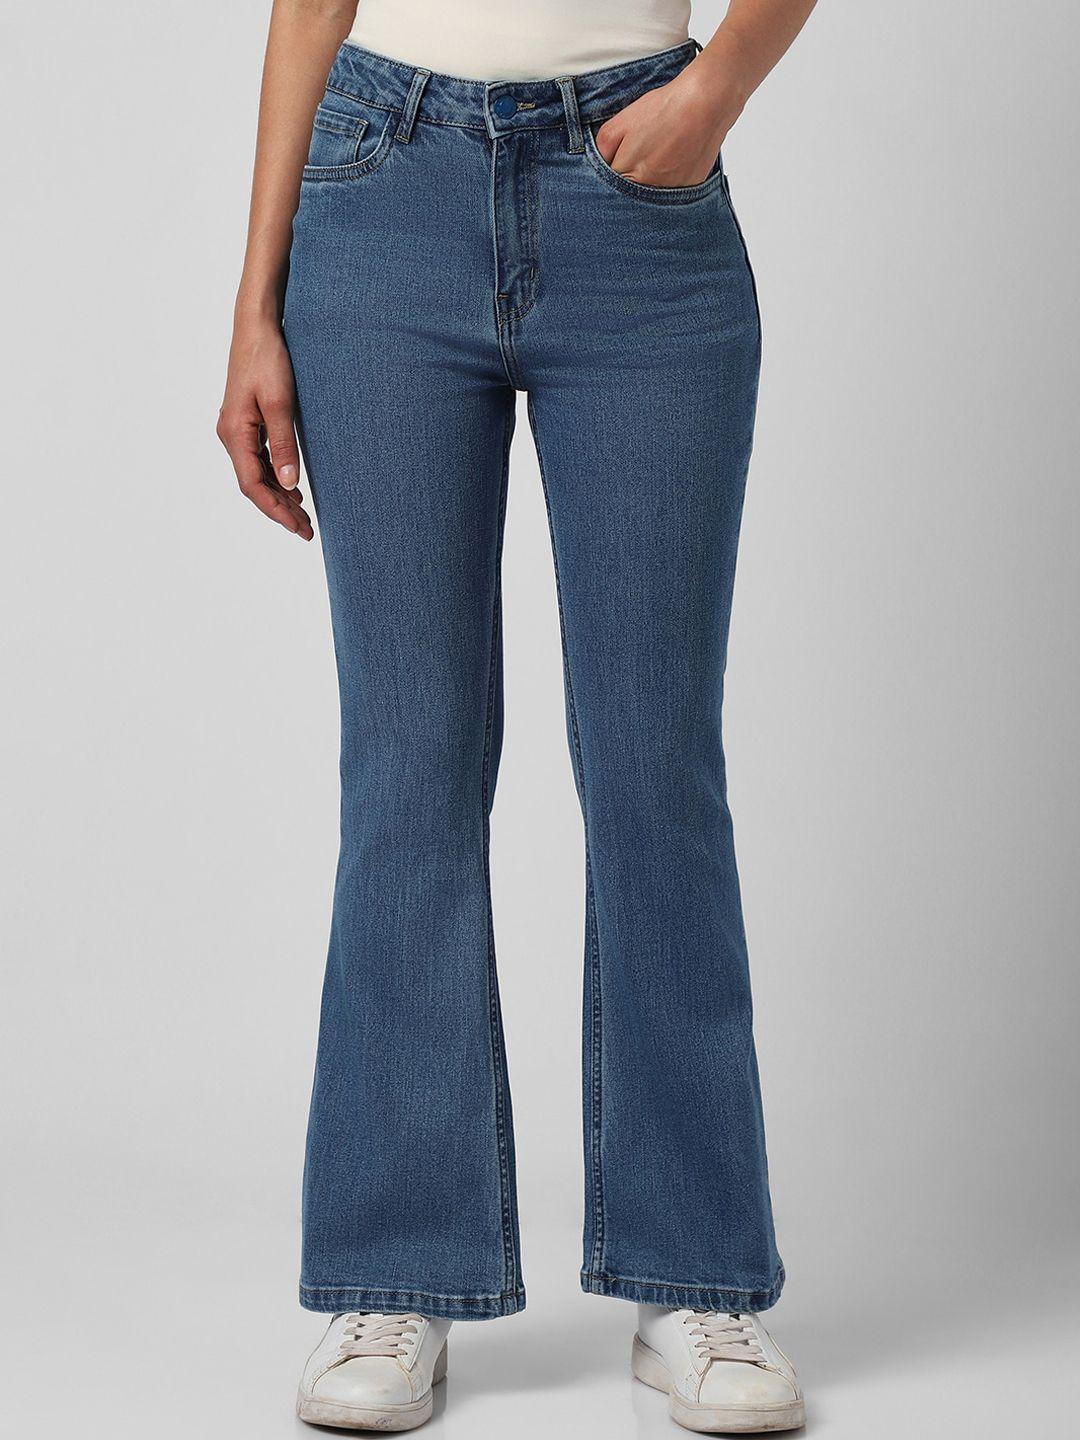 van heusen woman clean look mid-rise bootcut jeans